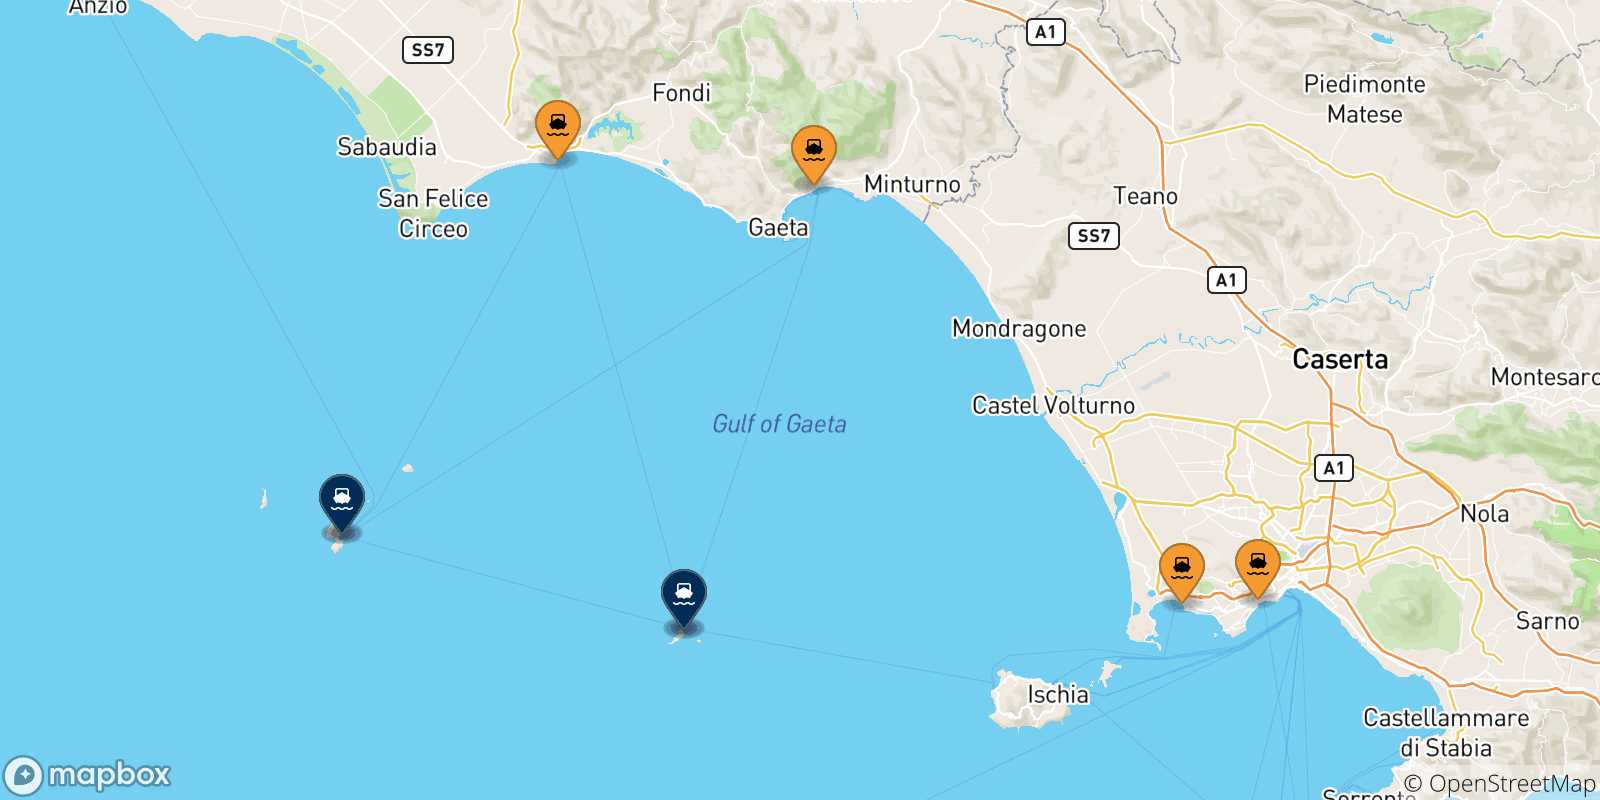 Mappa delle possibili rotte tra l'Italia e le Isole Pontine